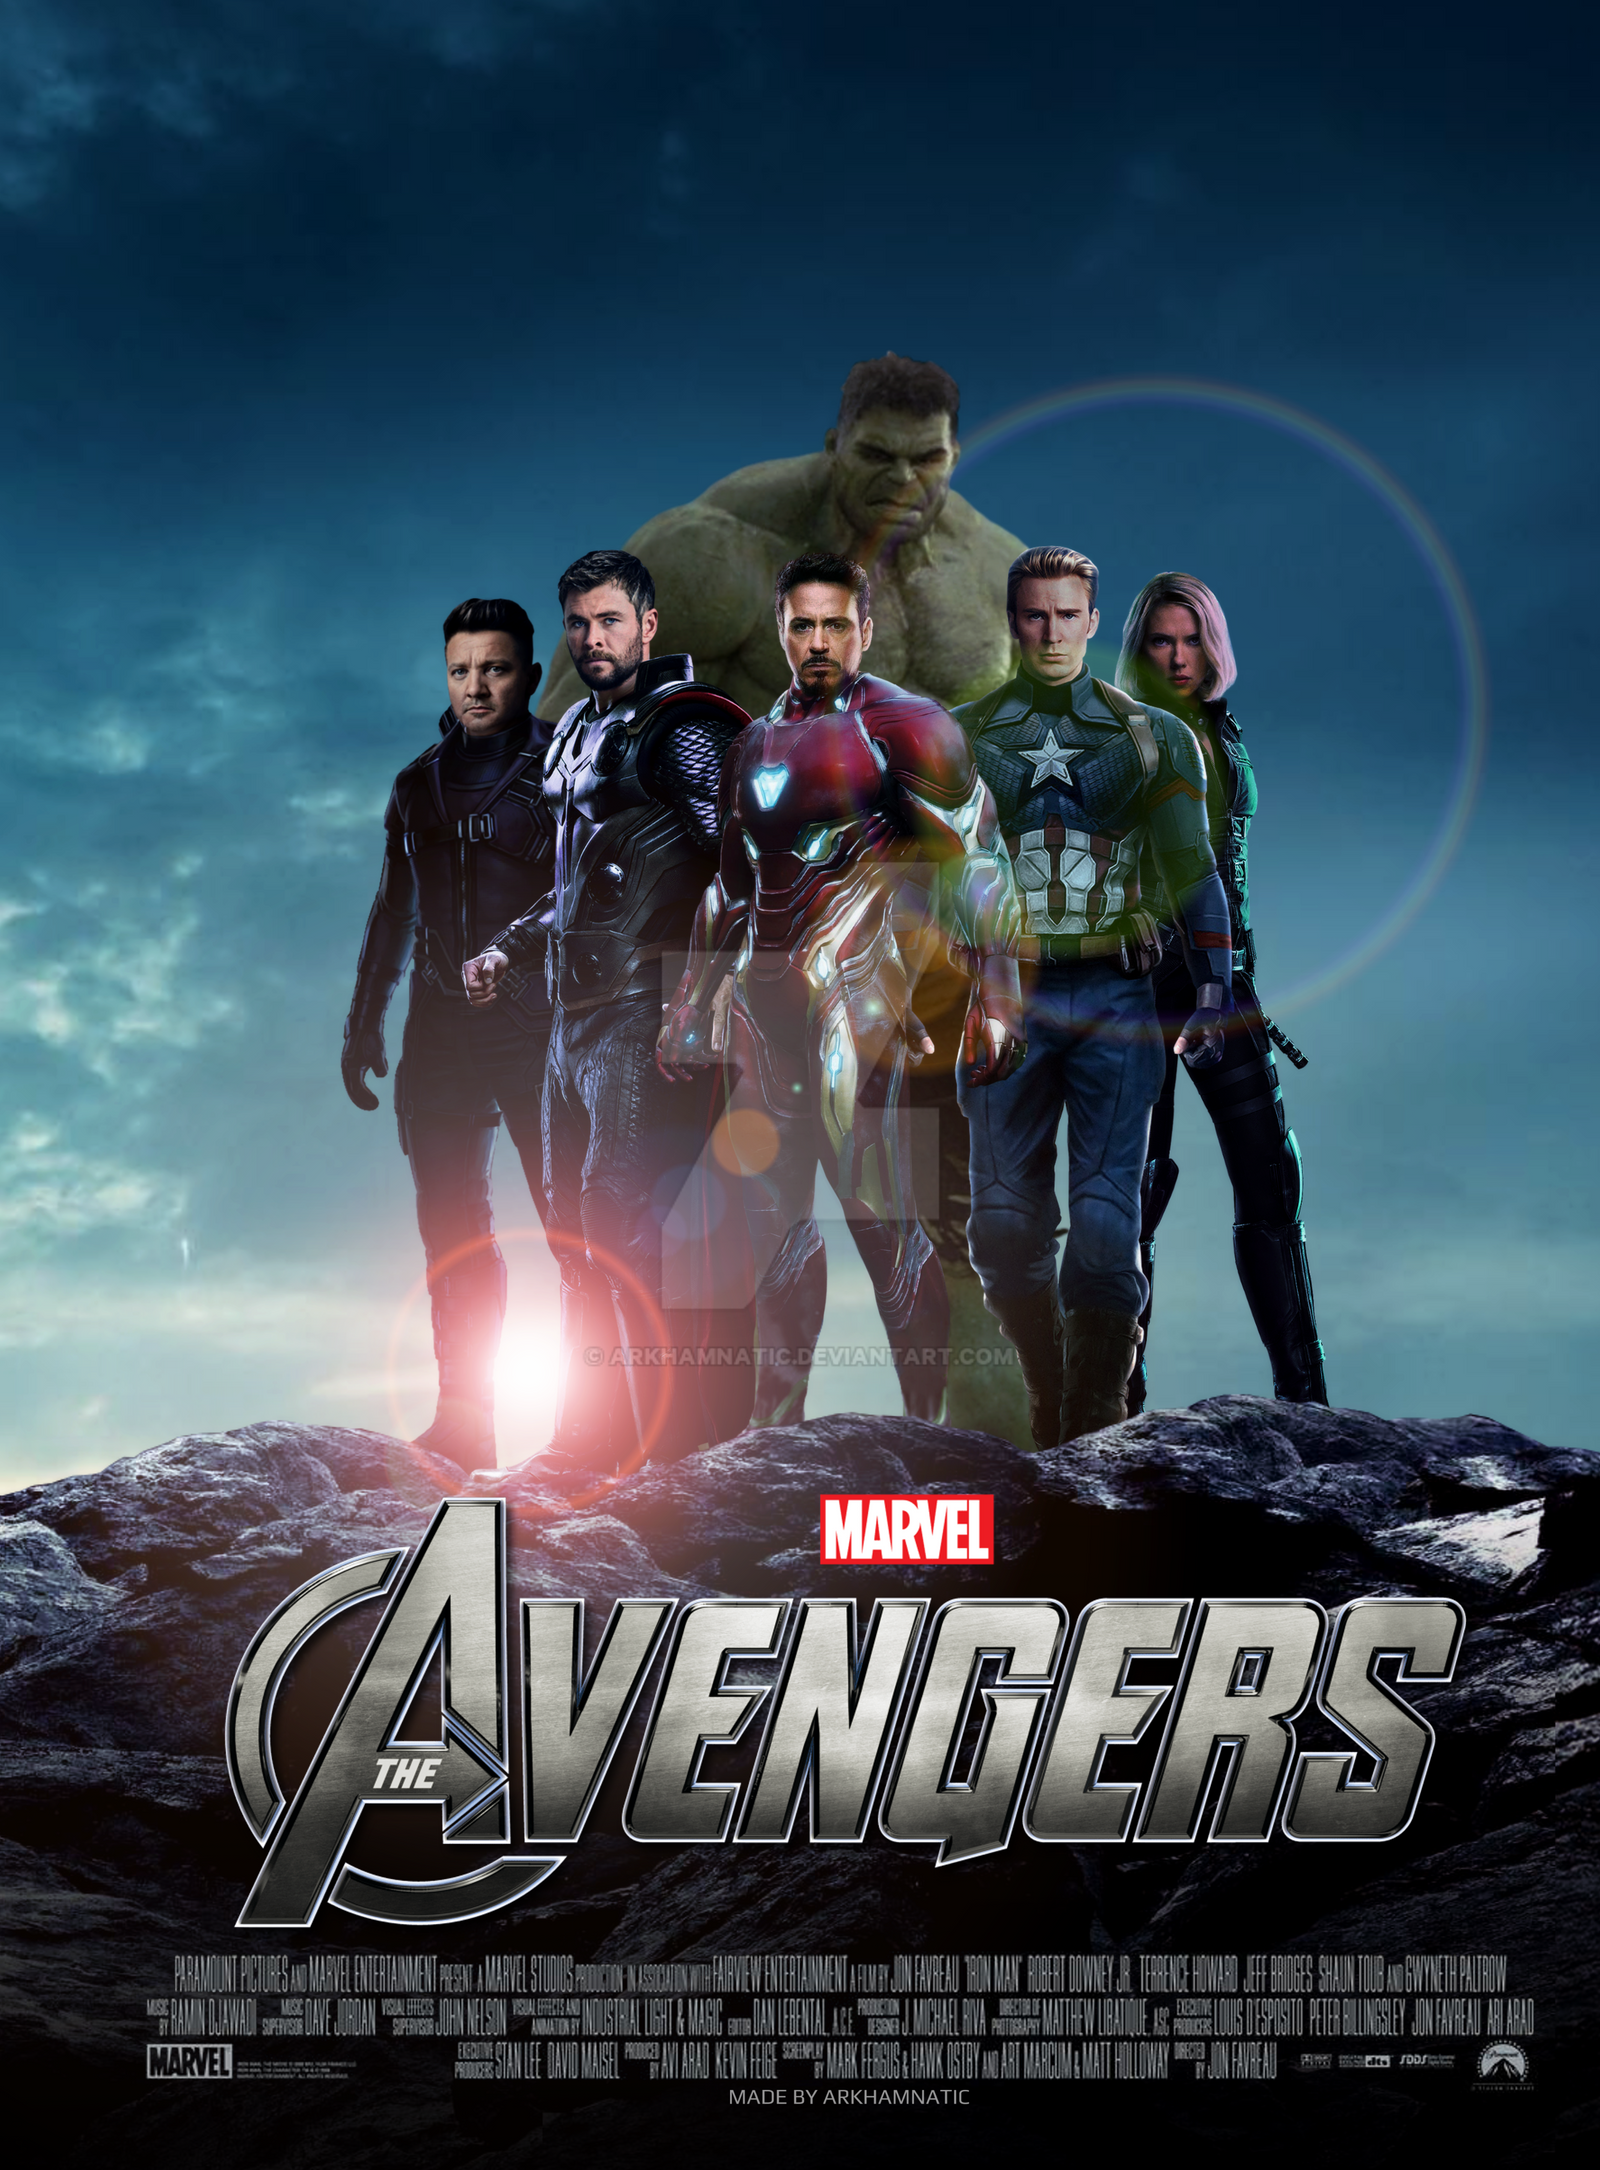 Marvel's Avengers movie poster by ArkhamNatic on DeviantArt